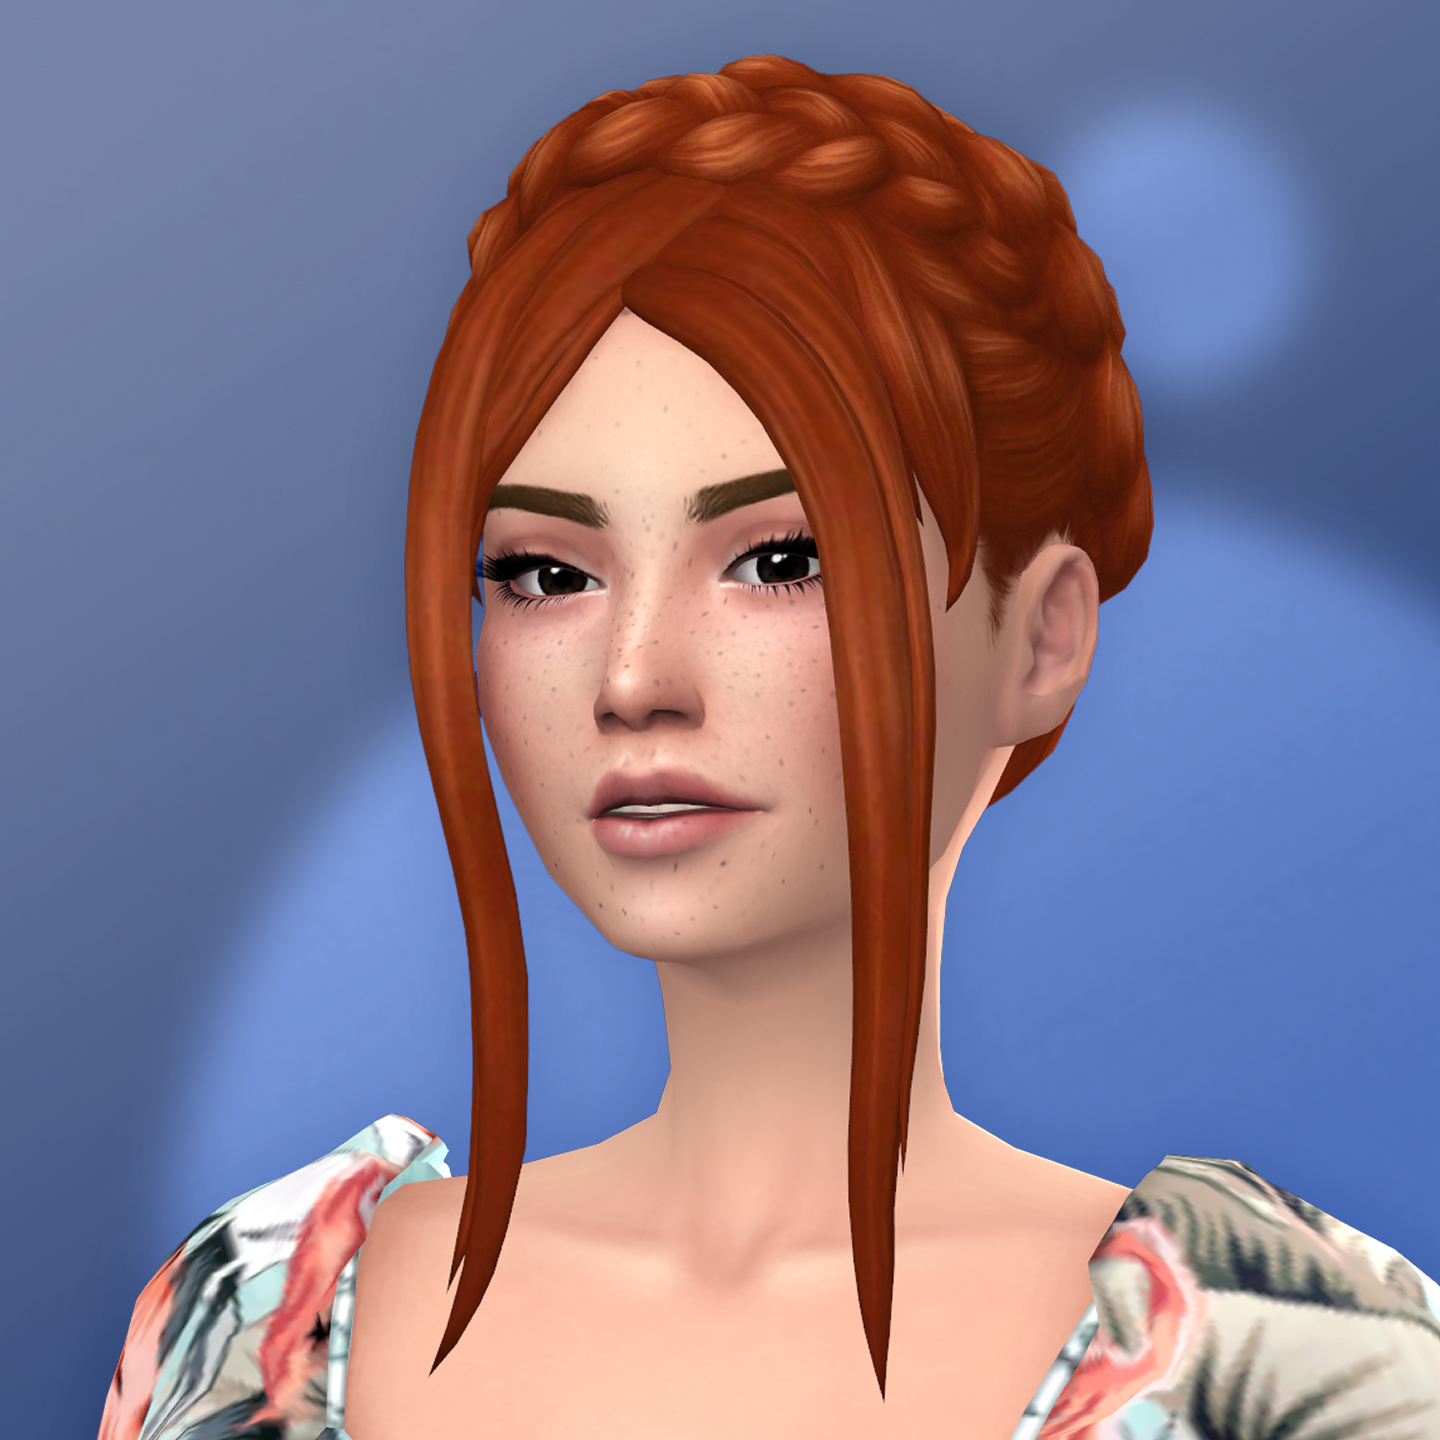 QICC - Holly Hair - The Sims 4 Create a Sim - CurseForge